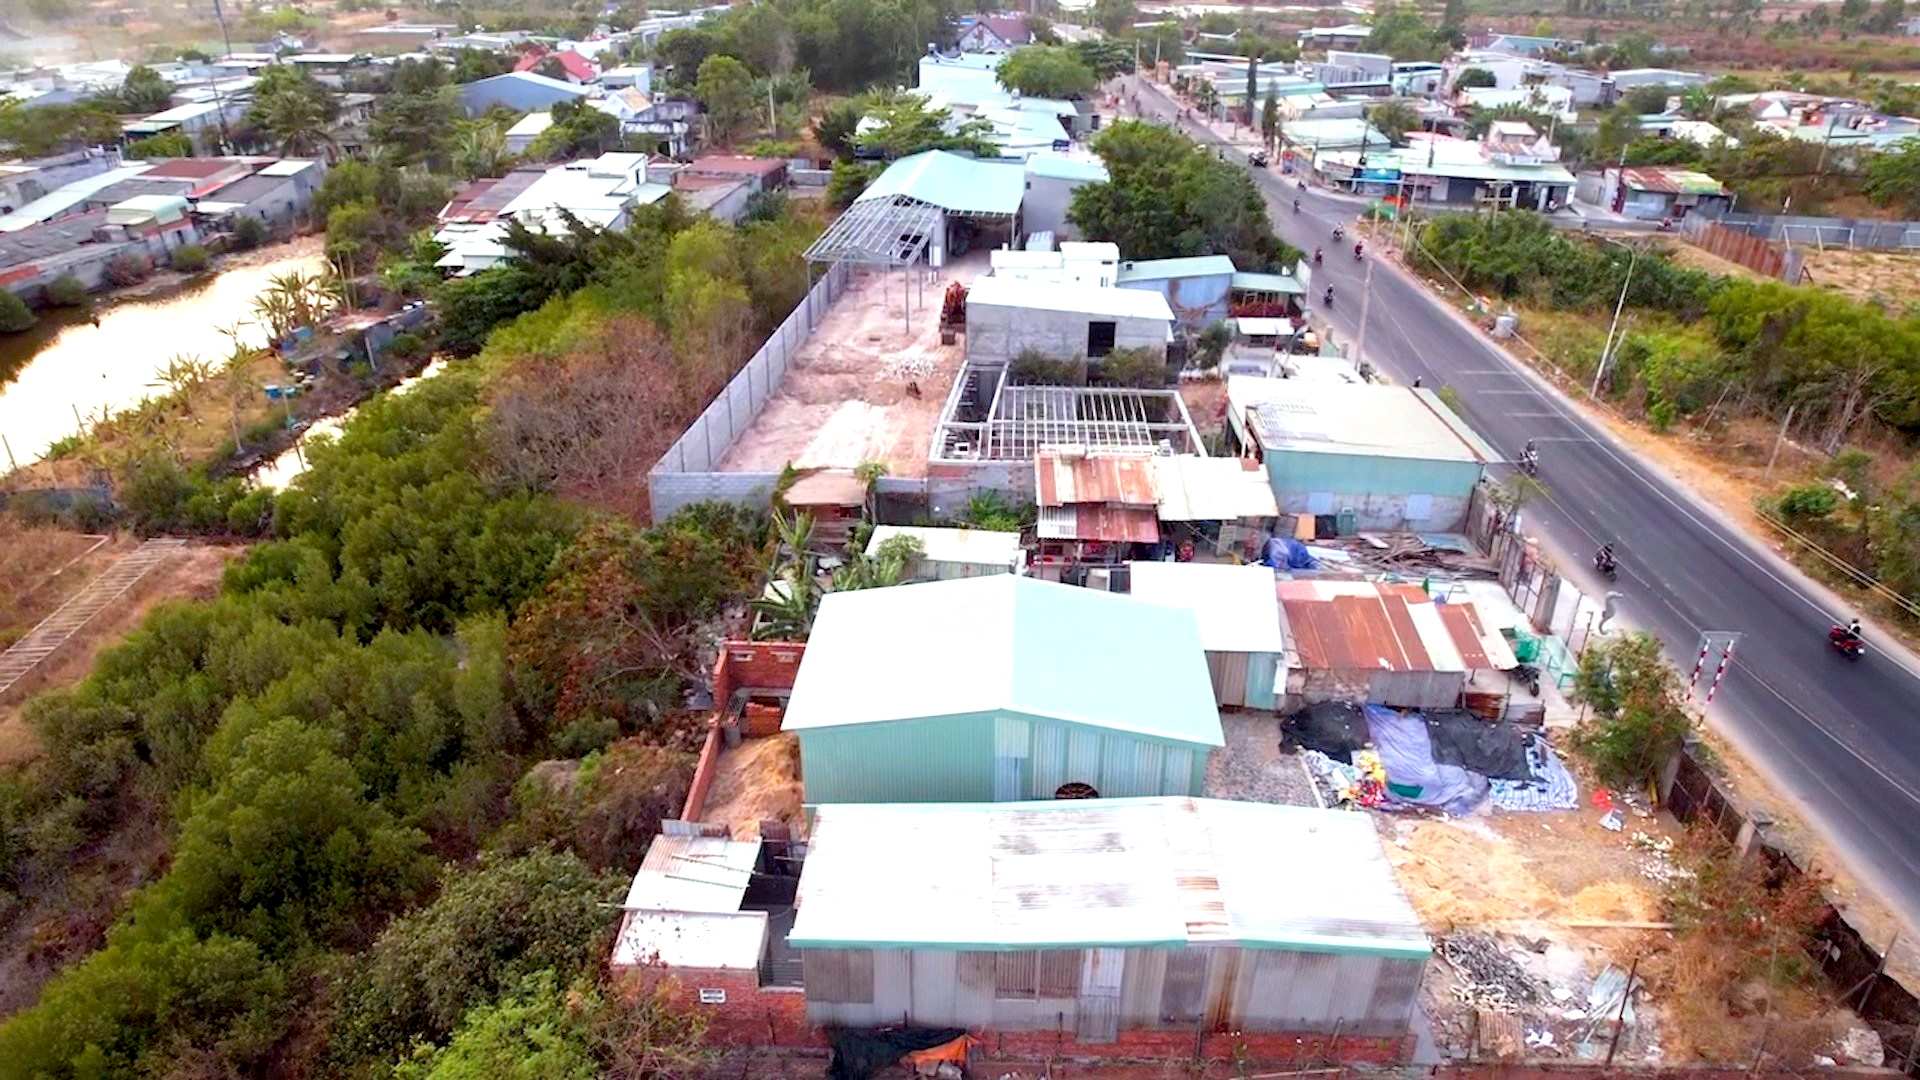 Hình ảnh từ flycam cho thấy một số ngôi nhà mới đã mọc lên khi dự án ĐT994 đang thực hiện công tác bồi thường giải phóng mặt bằng.